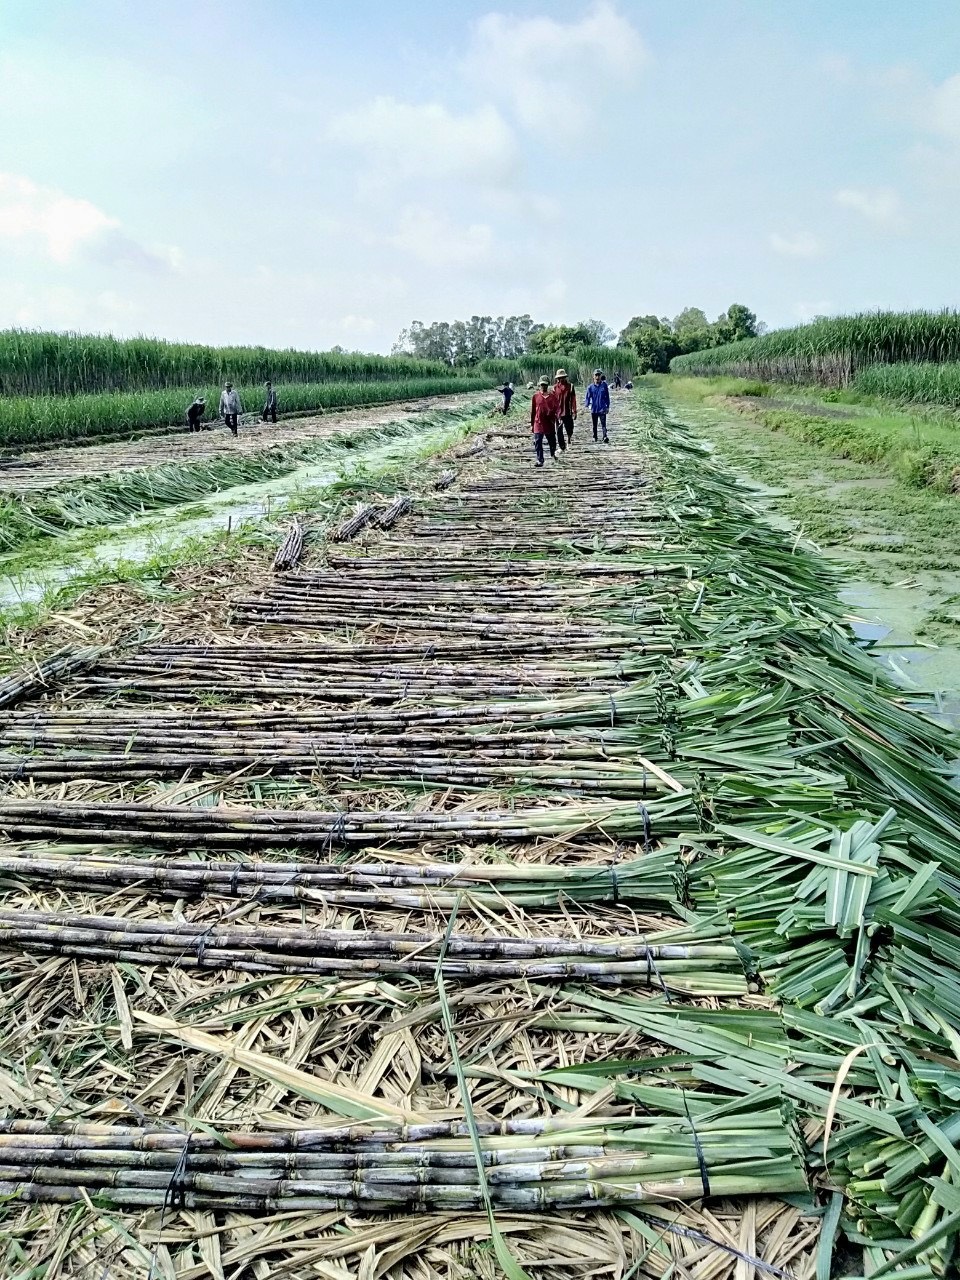 Trang trại trồng mía của Công ty Tân Gia Thành ở tỉnh Sóc Trăng